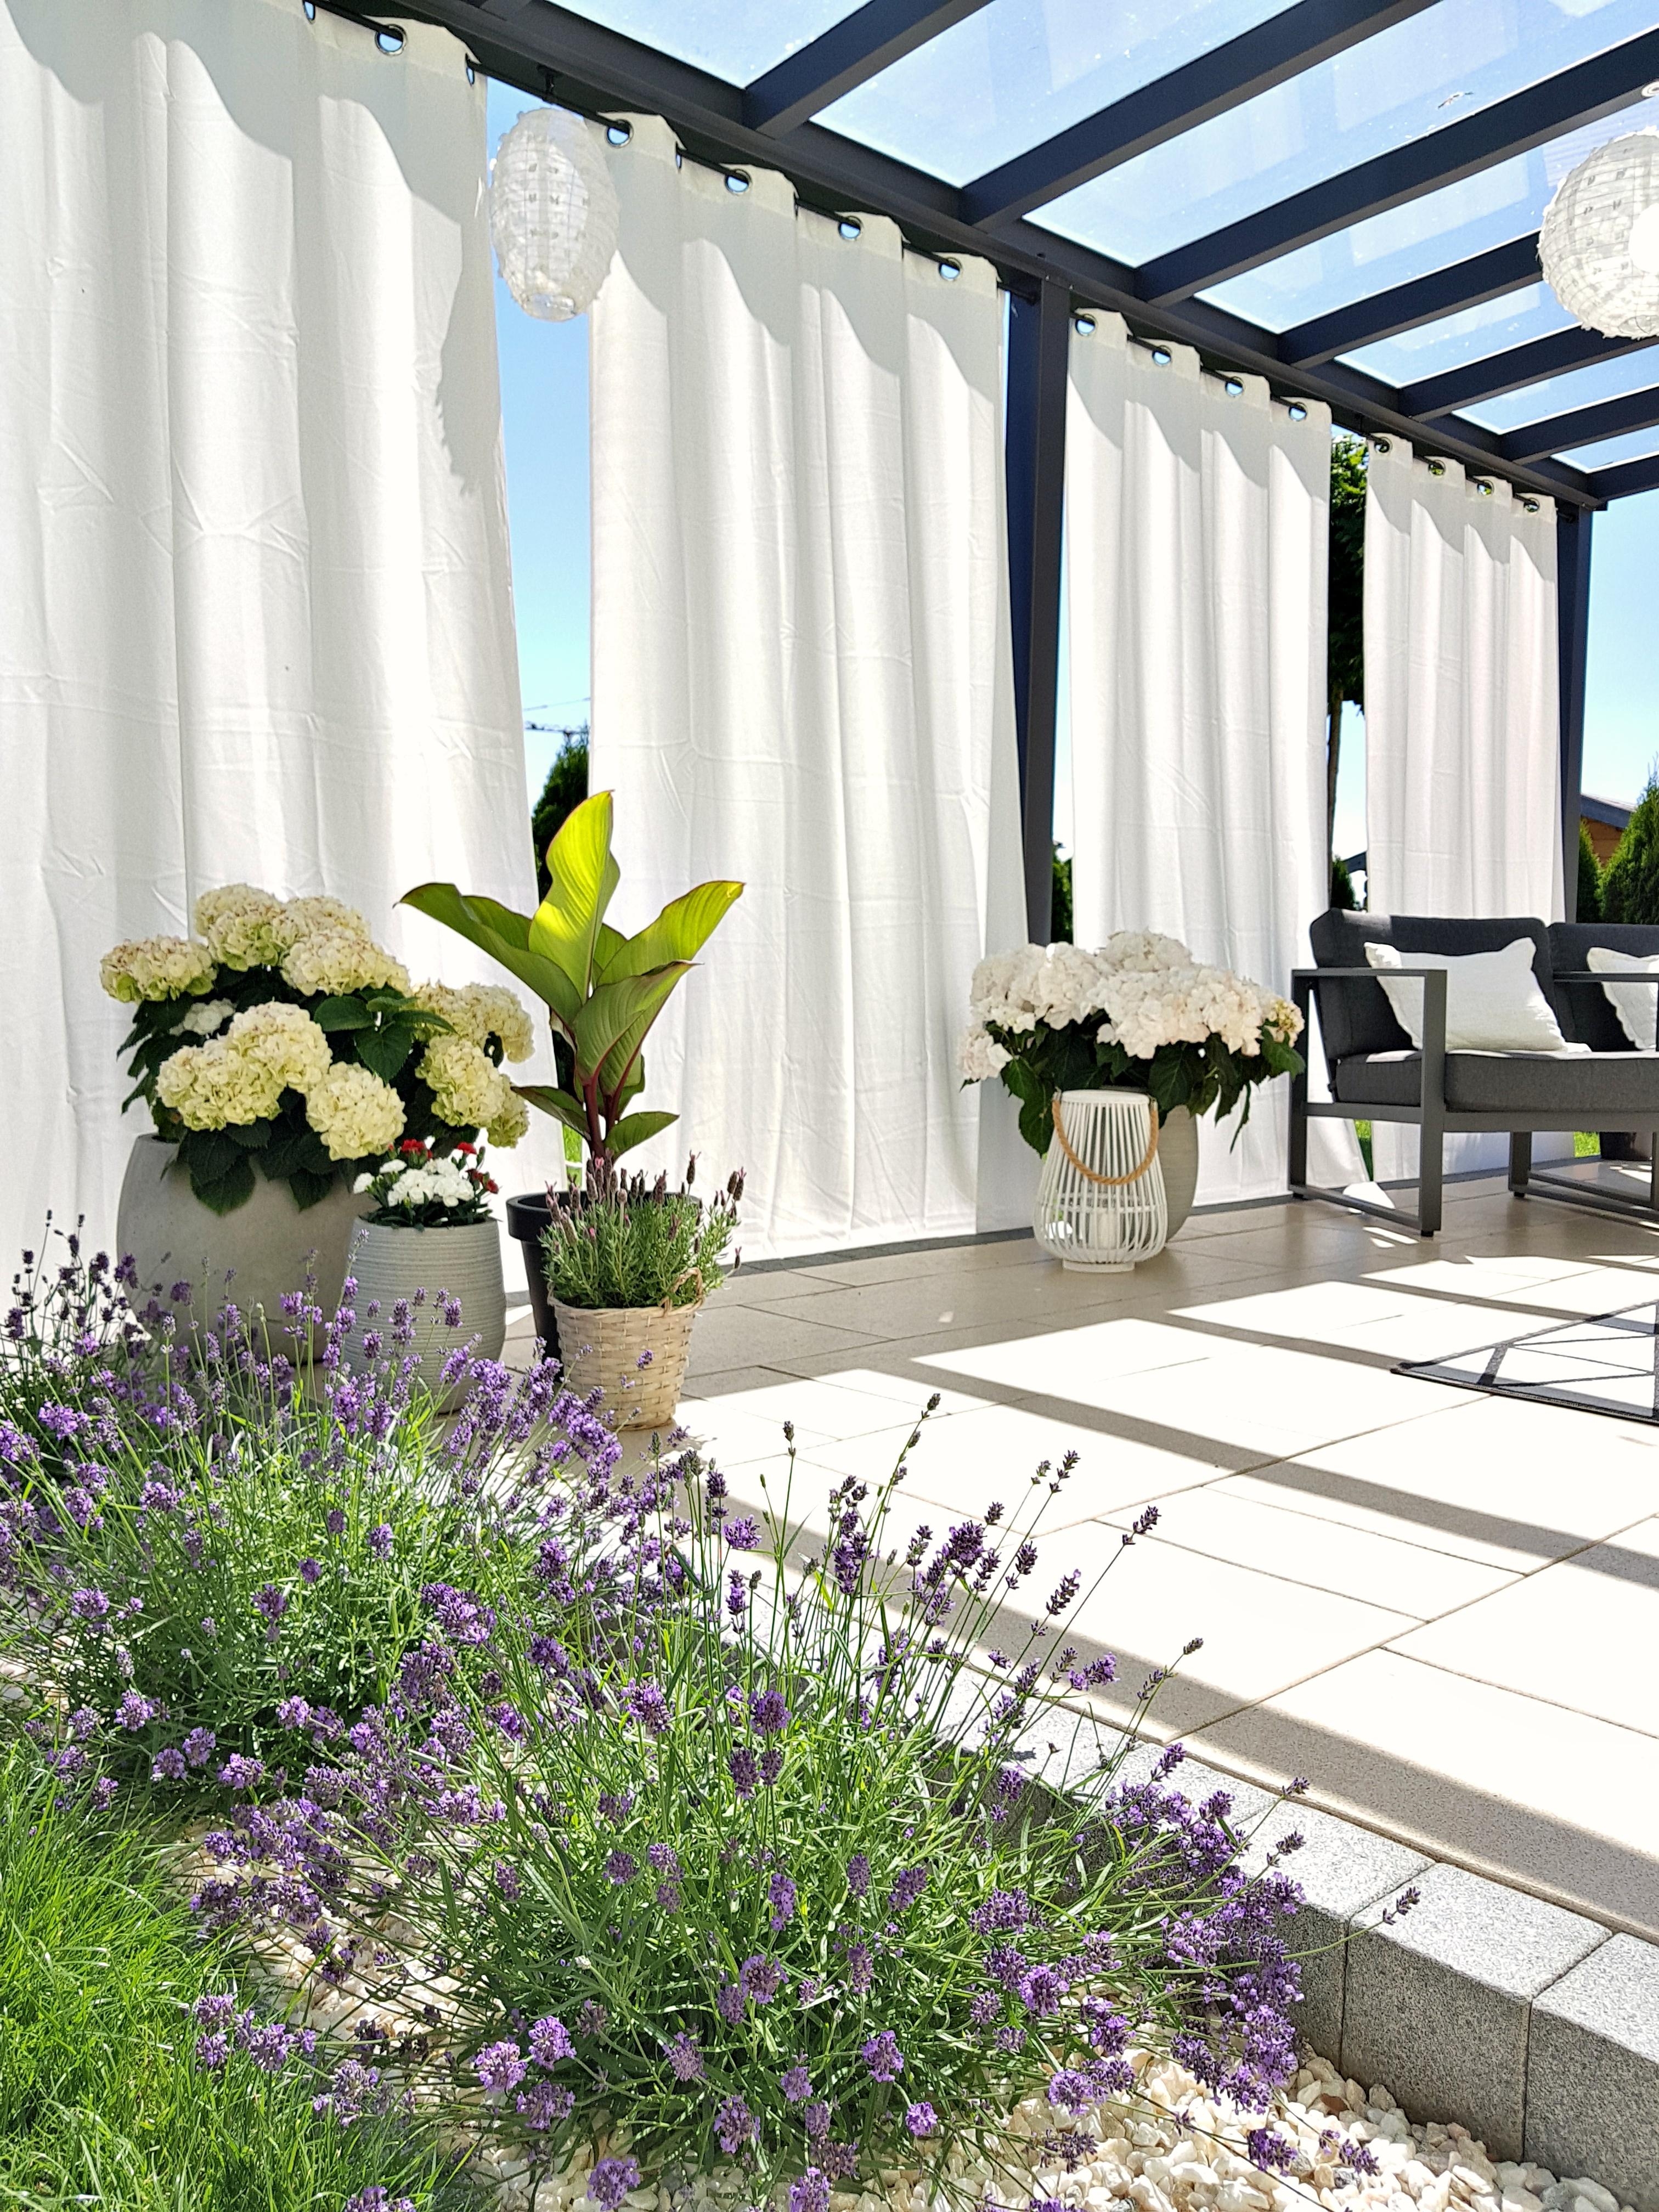 Ich liebe unsere neuen Outdoorvorhänge
#outdoorplaces #outdoorliving 
#outdoorvorhänge #terrassengestaltung 